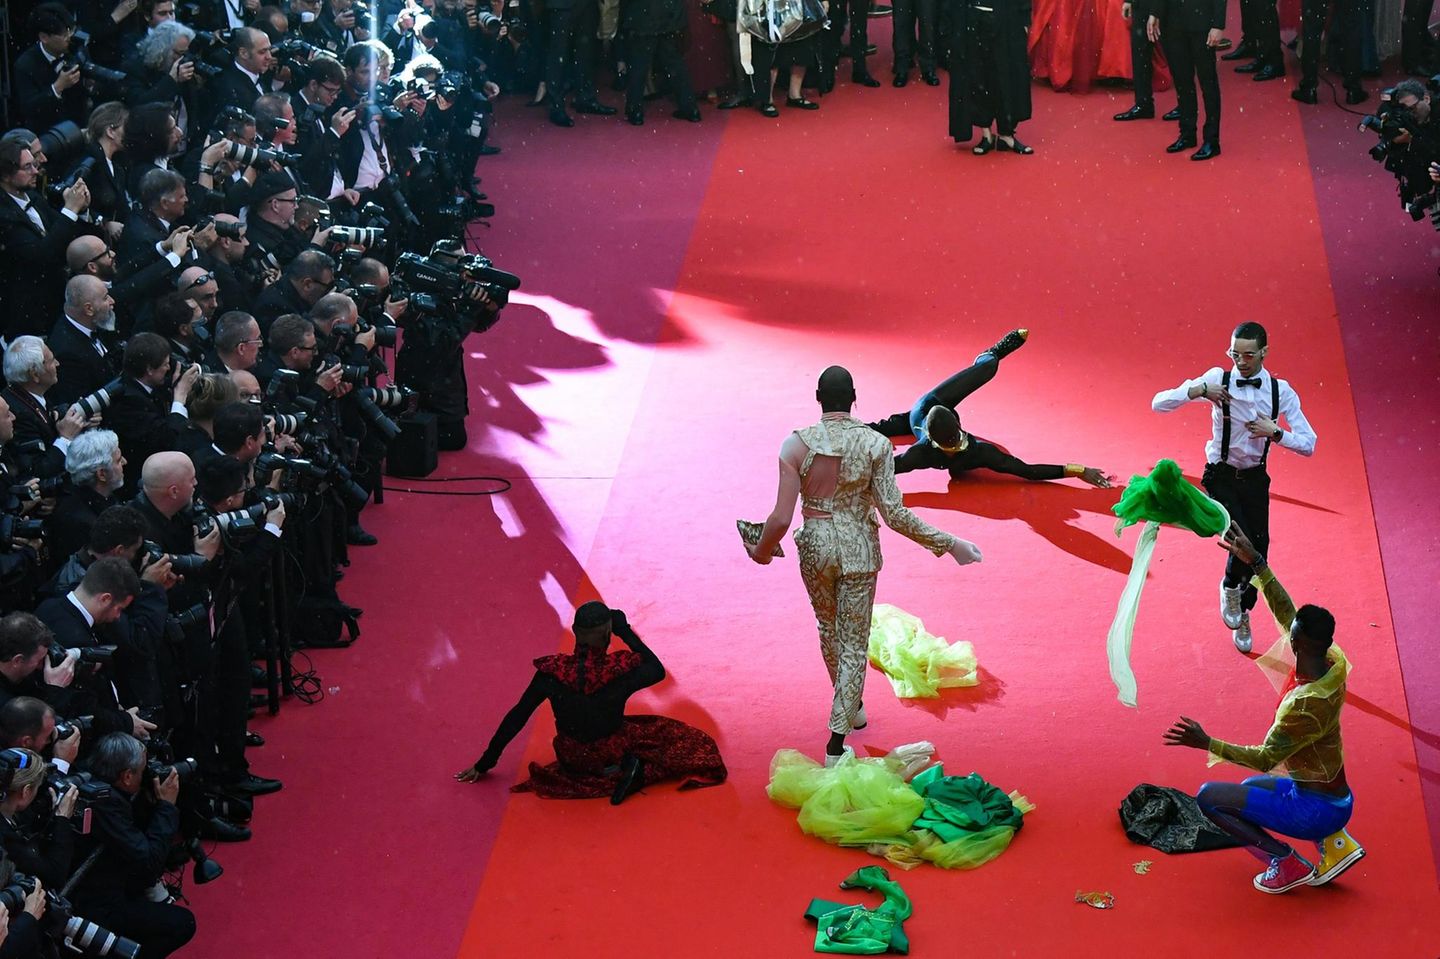 Diese Tänzer legen eine Performance auf dem roten Teppich hin. 